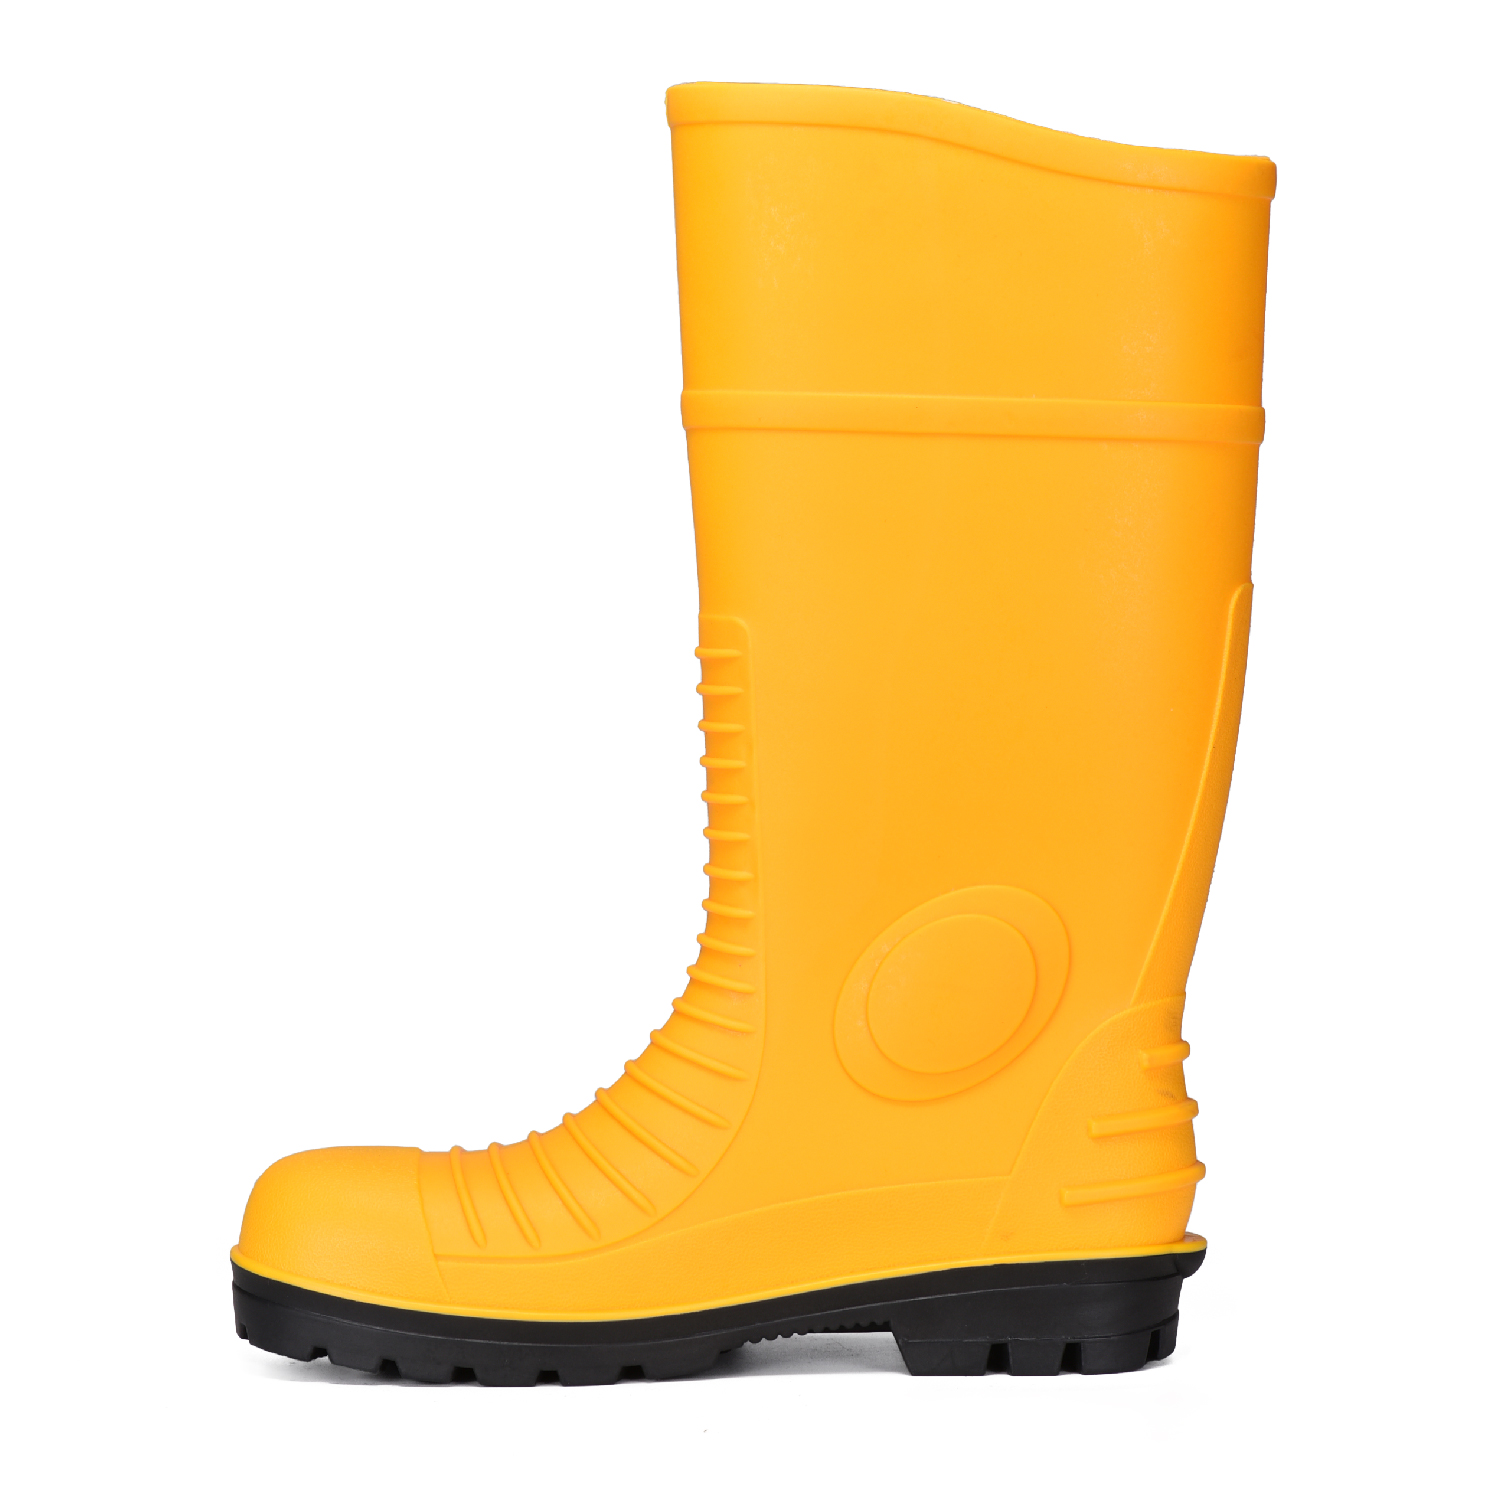 Желтые ботинки дождя безопасности ПВК минирования со стальным желтым цветом пальца ноги В-6055